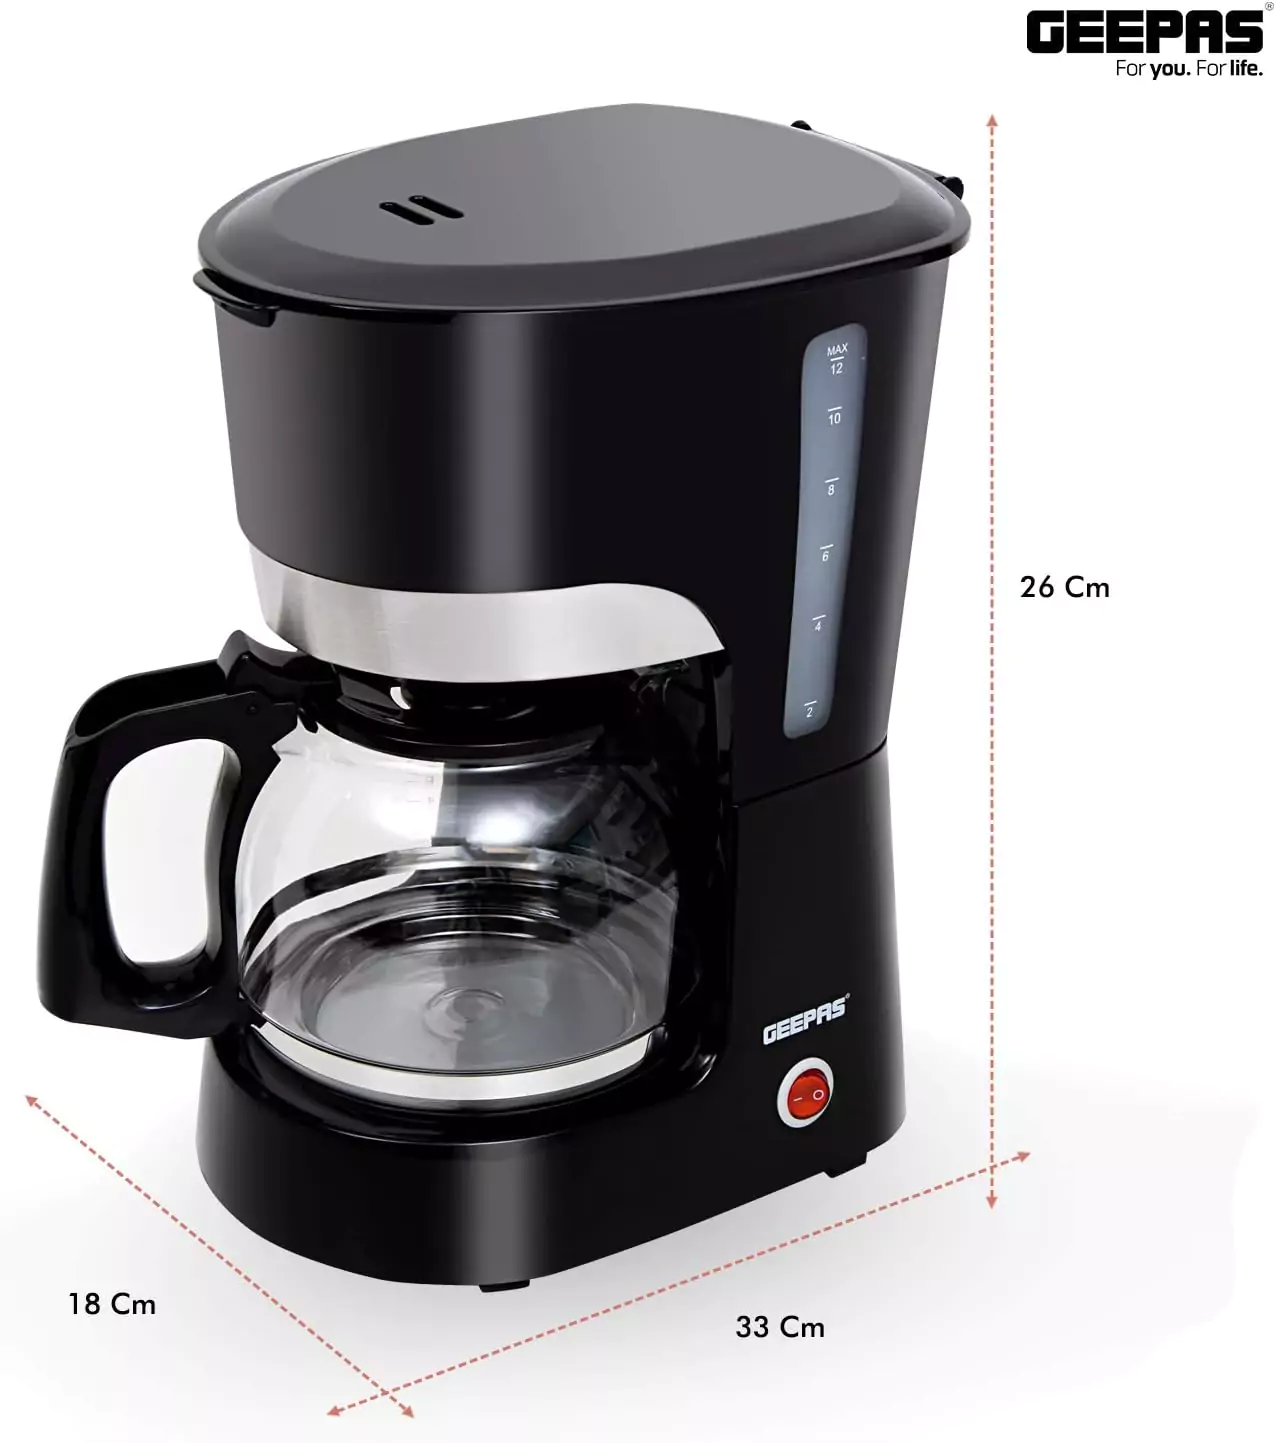 ☕Geepas American Liquid Filter Coffee Maker, Black - Gcm6103